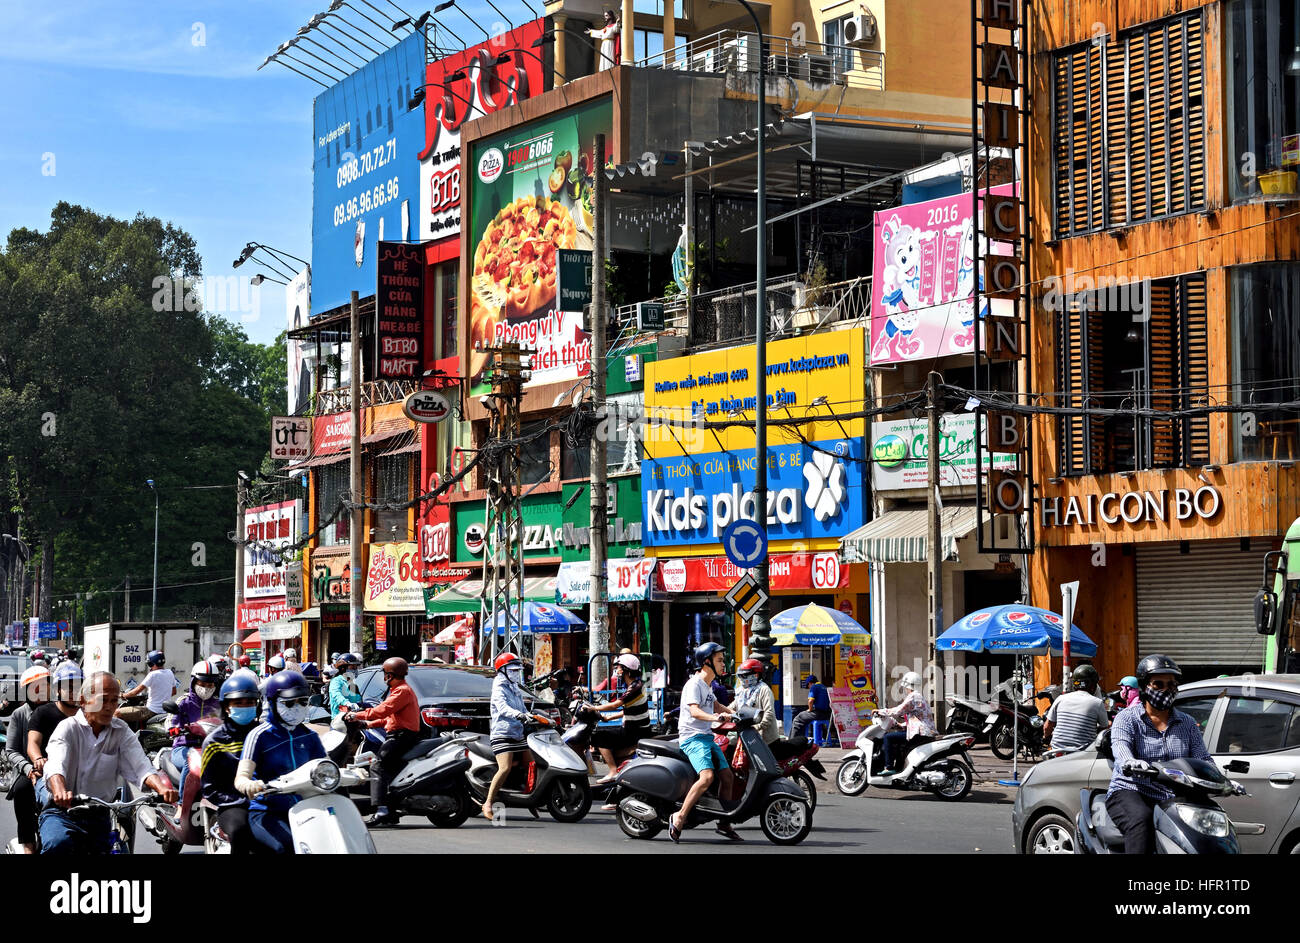 L'heure de pointe, les usagers des taxis voitures motos scooters Cuisiniere street - Nga Sau Cong Hoa Ho Chi Minh Ville (Saigon) Vietnam Banque D'Images